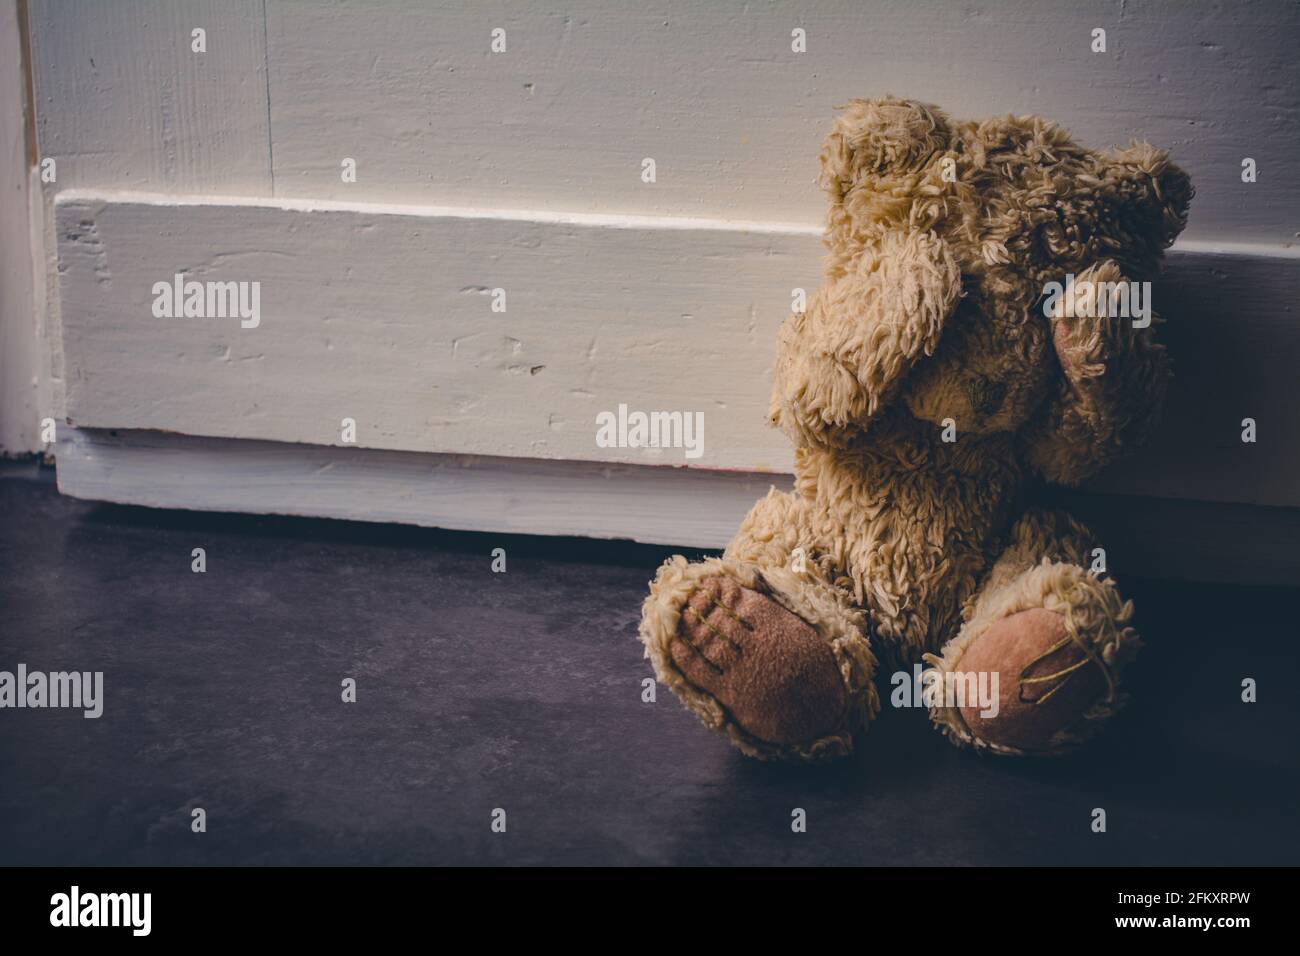 Verlassene Teddy bedeckt seine Augen, sitzt an EINER Tür - Kindesmissbrauch Konzept Stockfoto